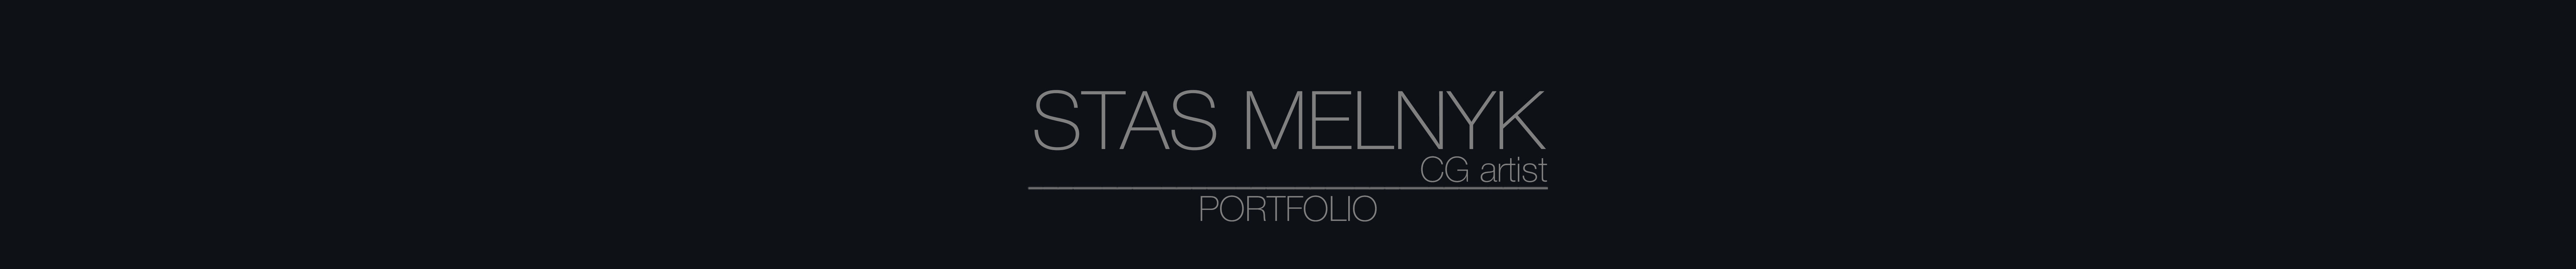 Bannière de profil de Stas Melnyk